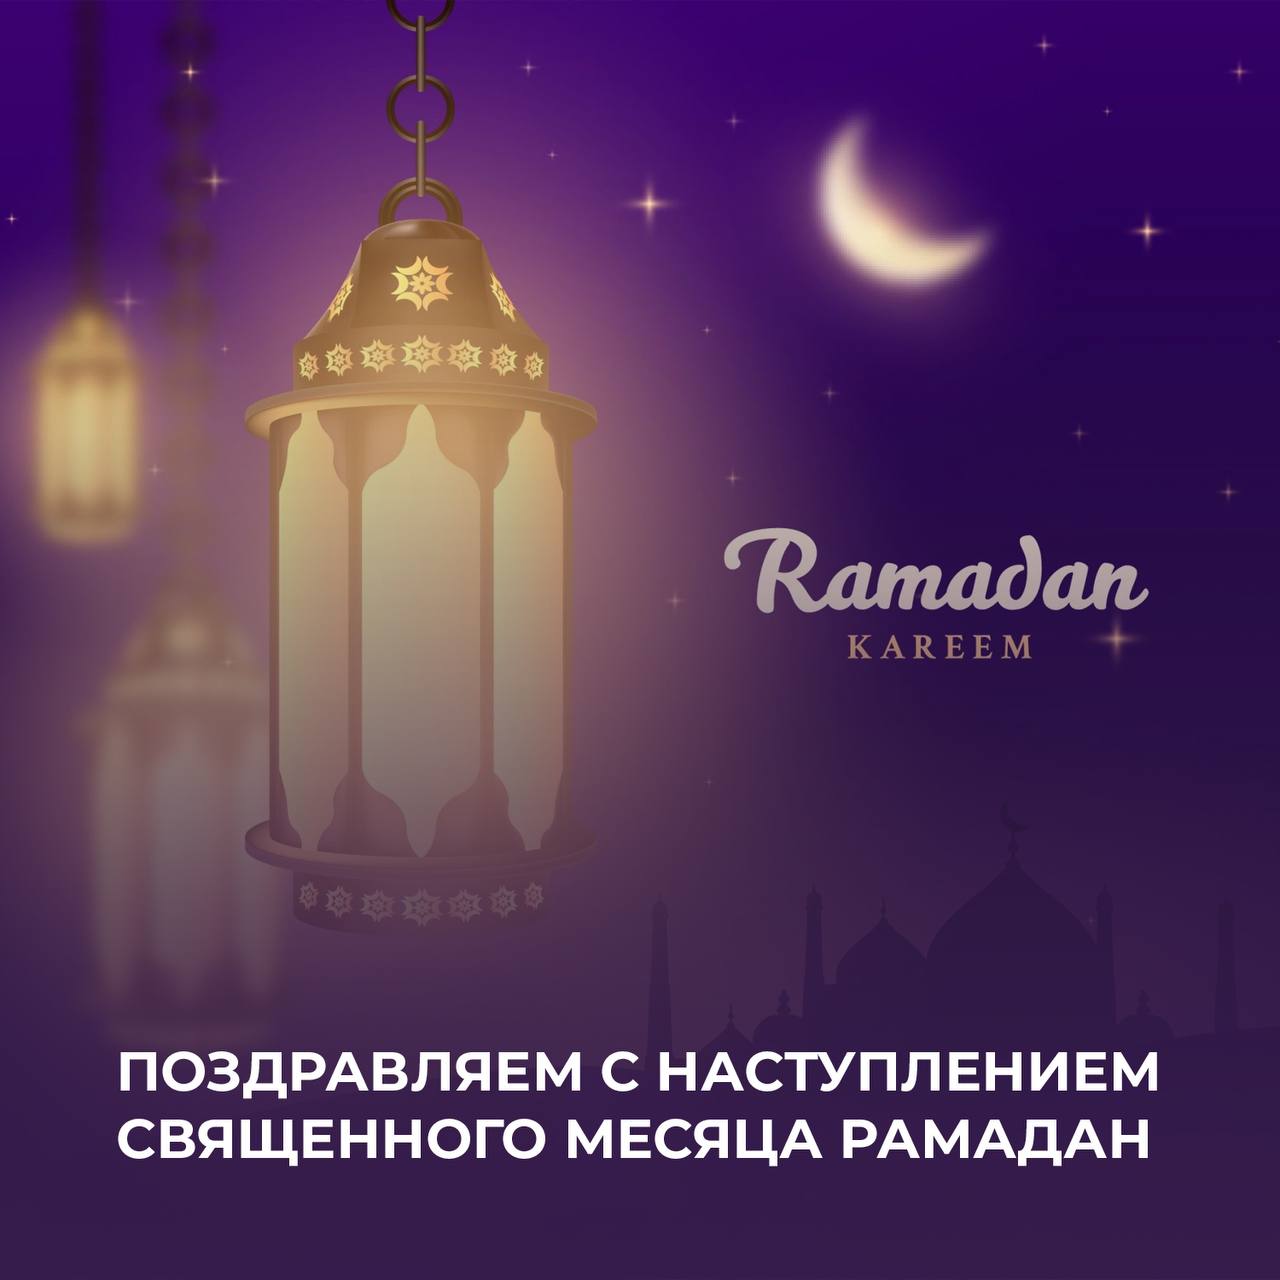 Поздравляем всех жителей нашей республики с началом священного месяца Рамадан!